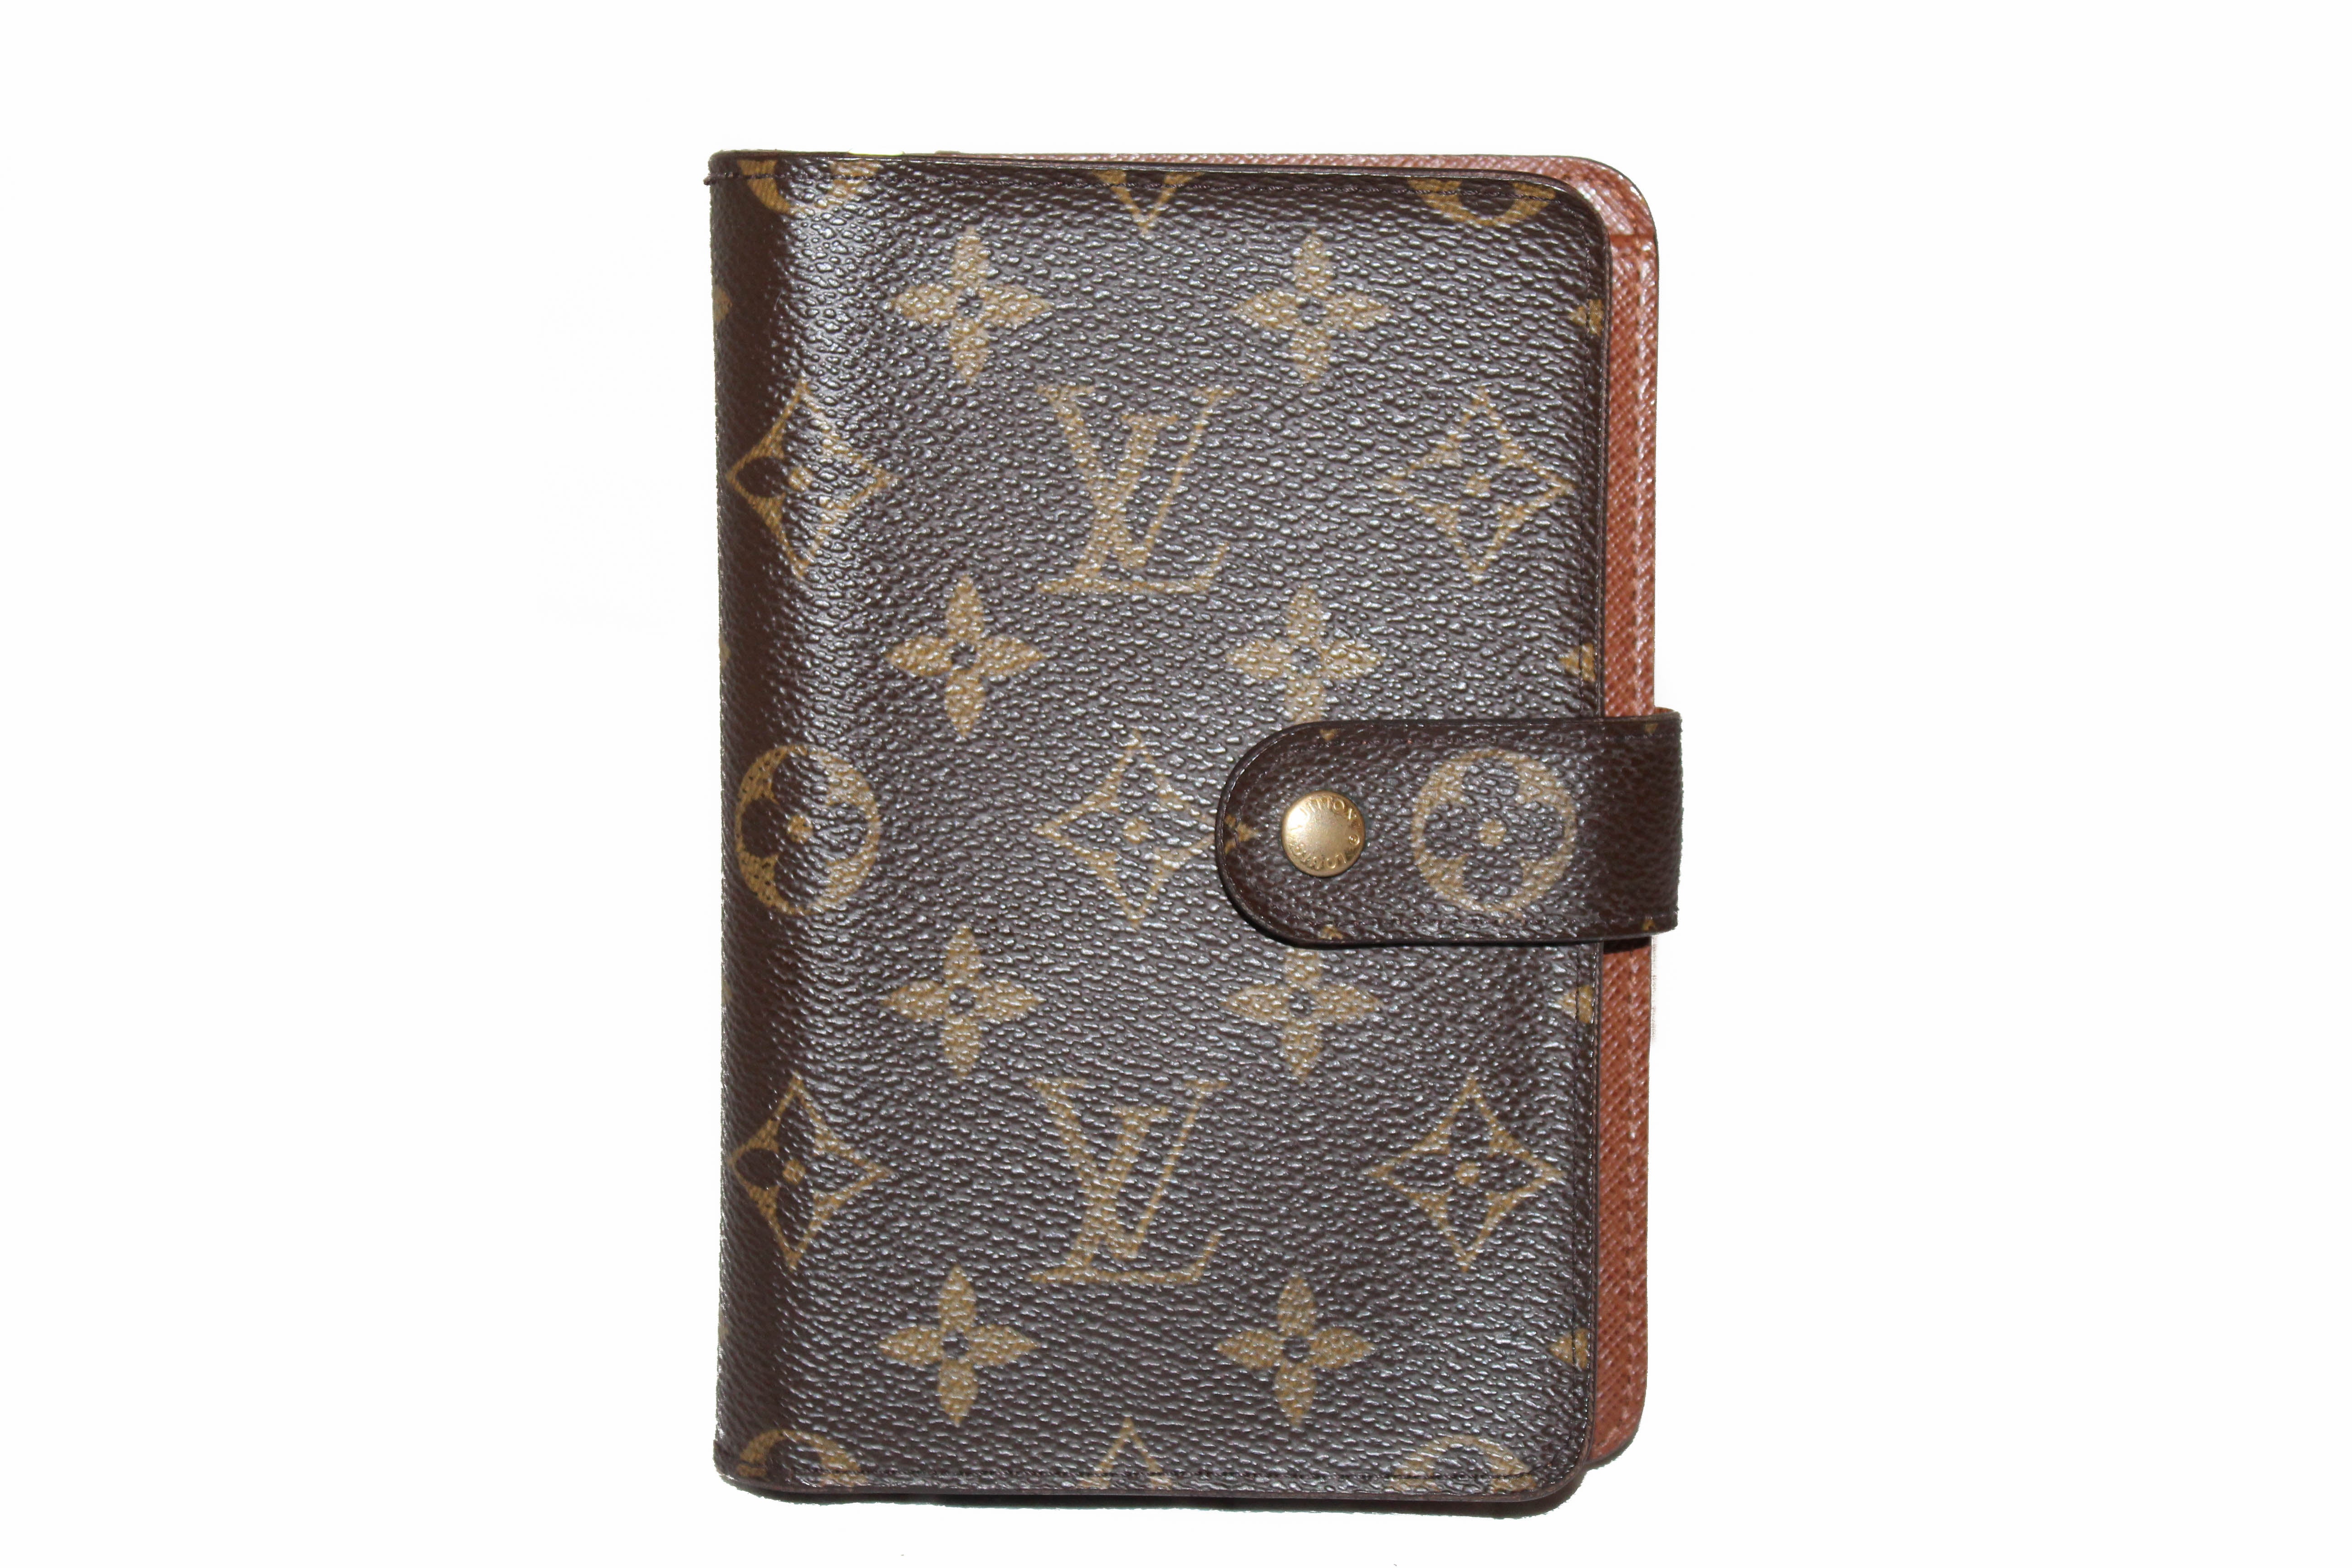 AUTHENTIC vintage Louis Vuitton Compact Purse LV wallet, Women's